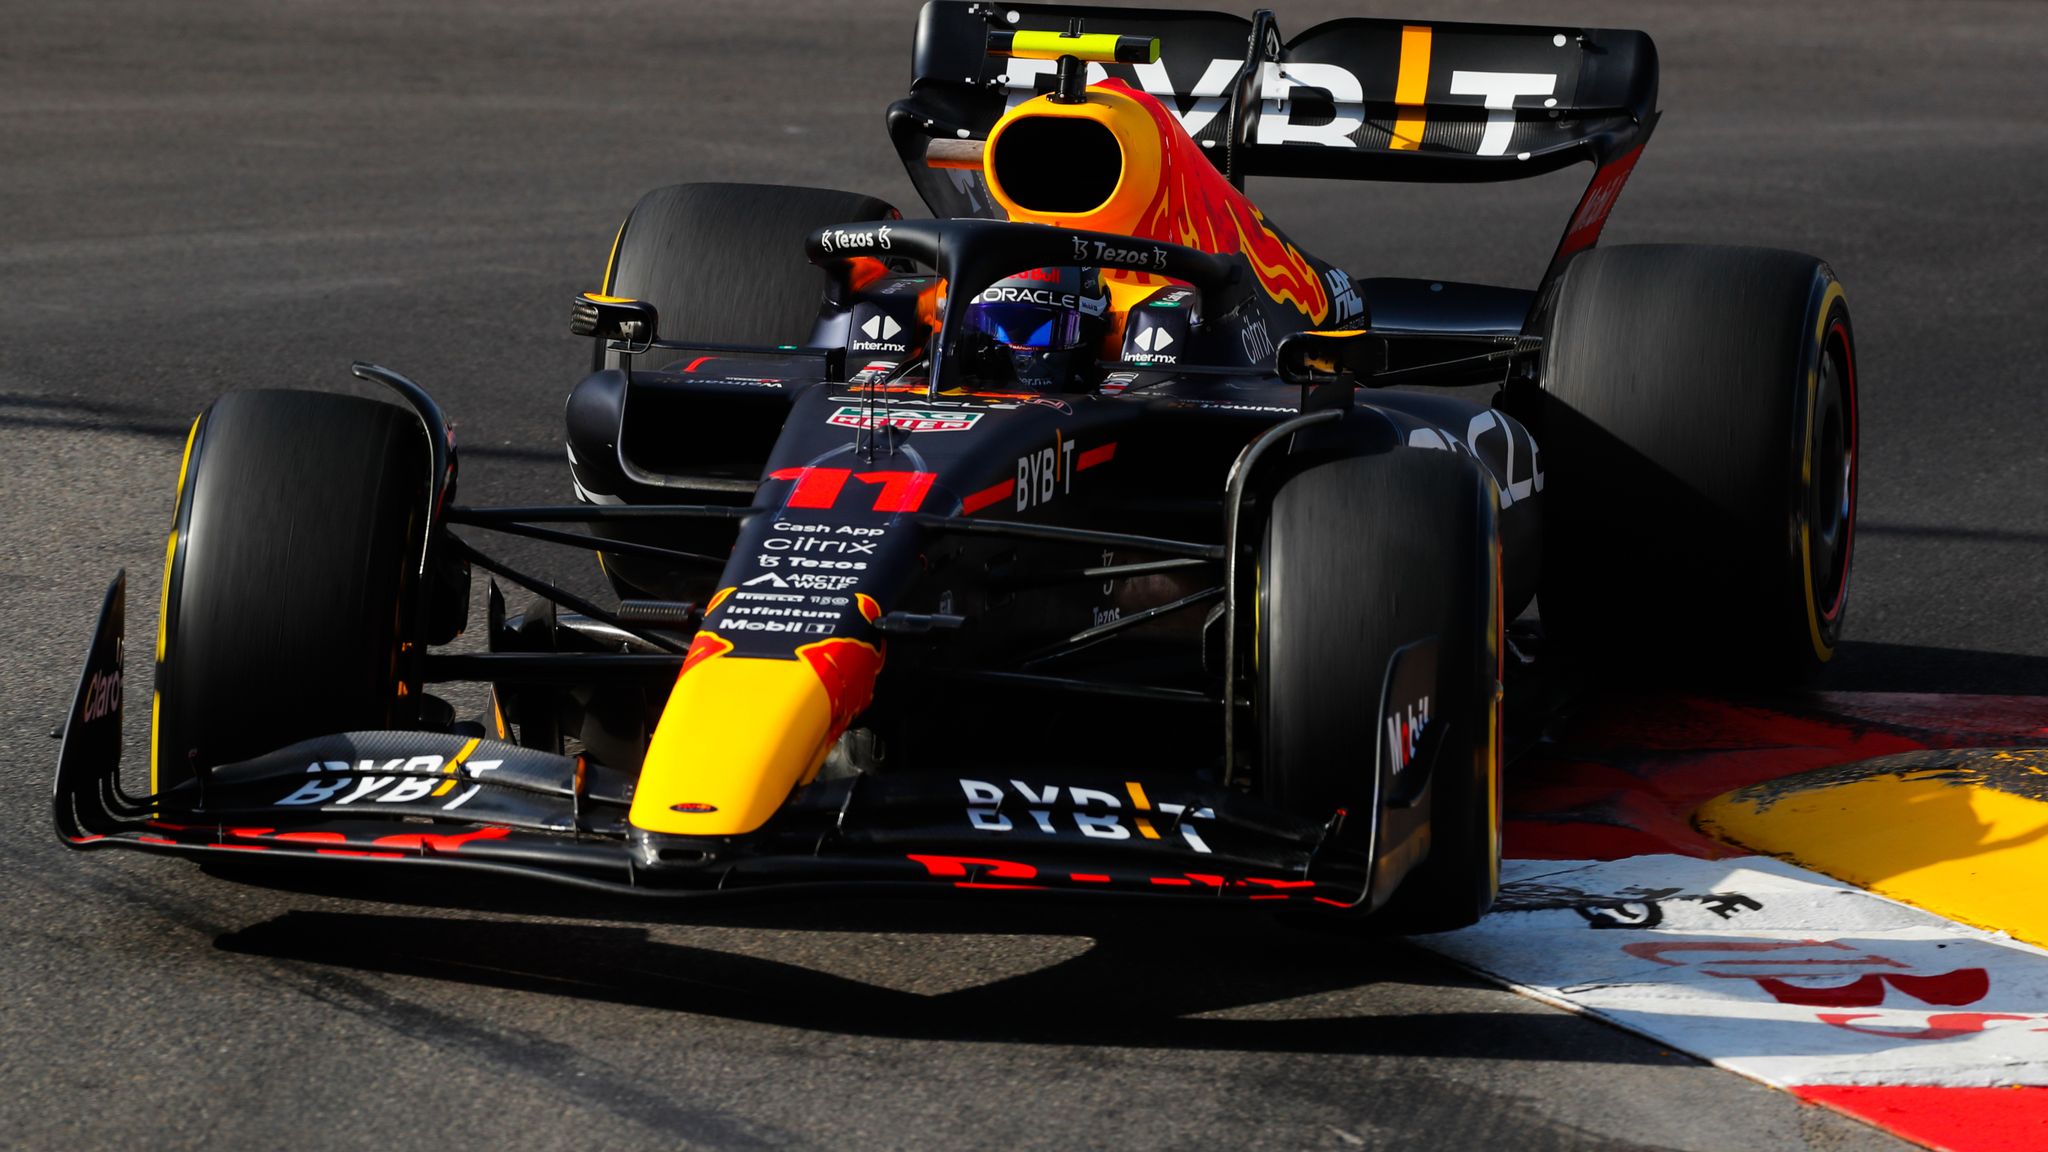 F1 Grand Prix race results: Sergio Perez wins Monaco GP